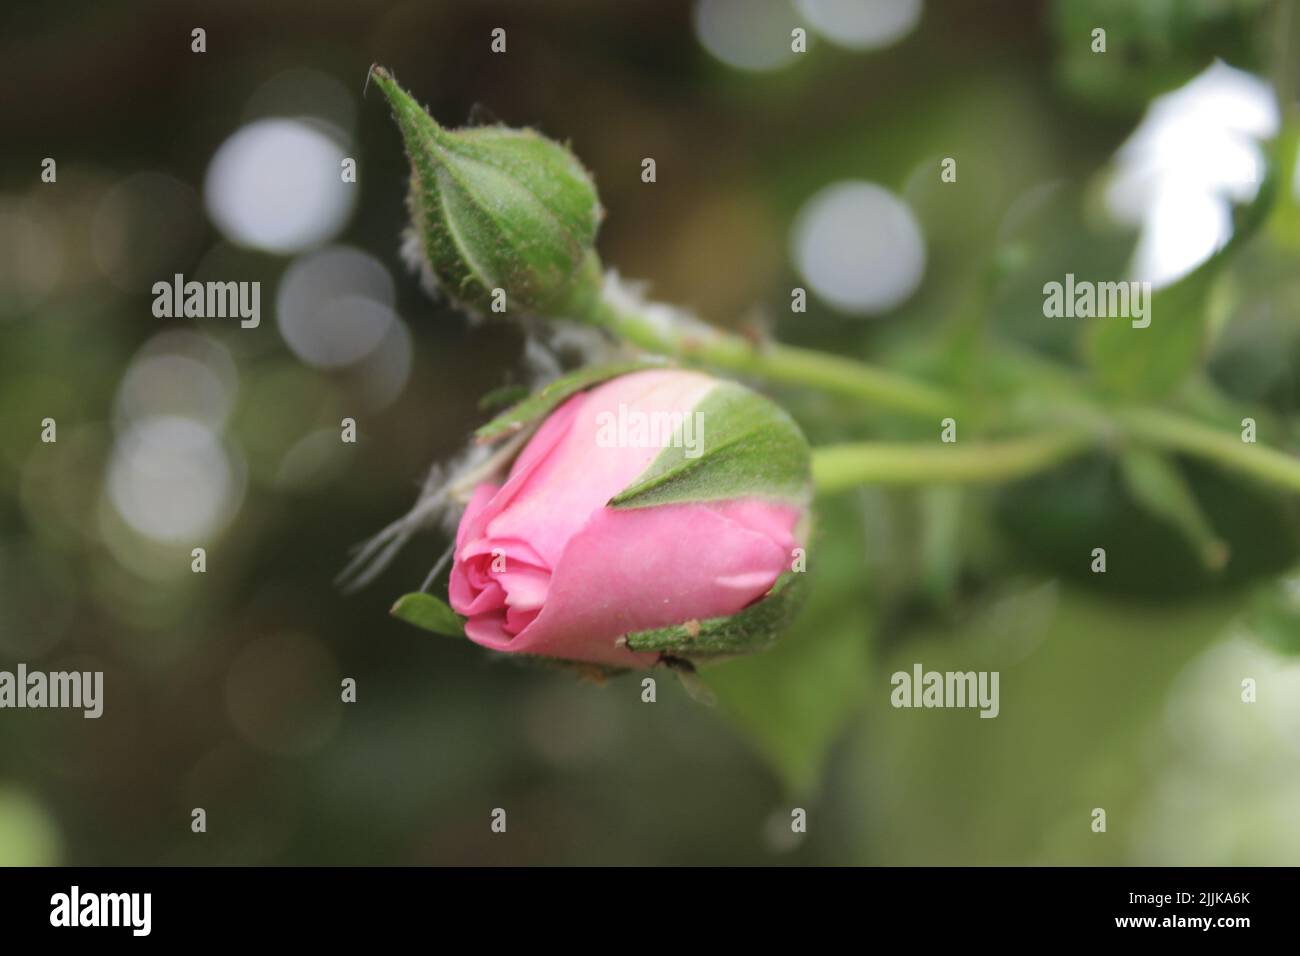 Macrophotographie de Rosebuds. L'été s'épanouit en gros plan. Roses roses roses dans le jardin. Pétales de fleurs roses. Arrière-plan vert. Feuillages luxuriants. Arbre broussaillé. Banque D'Images